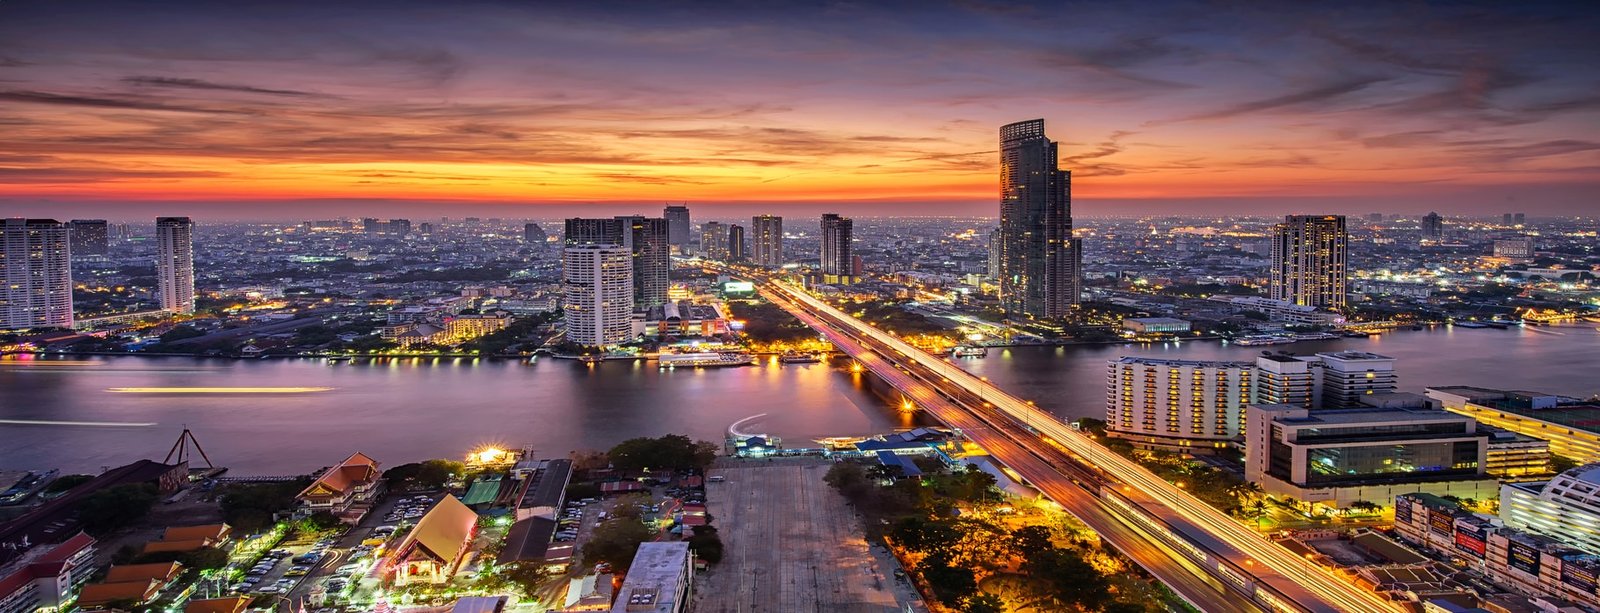 THAILANDII